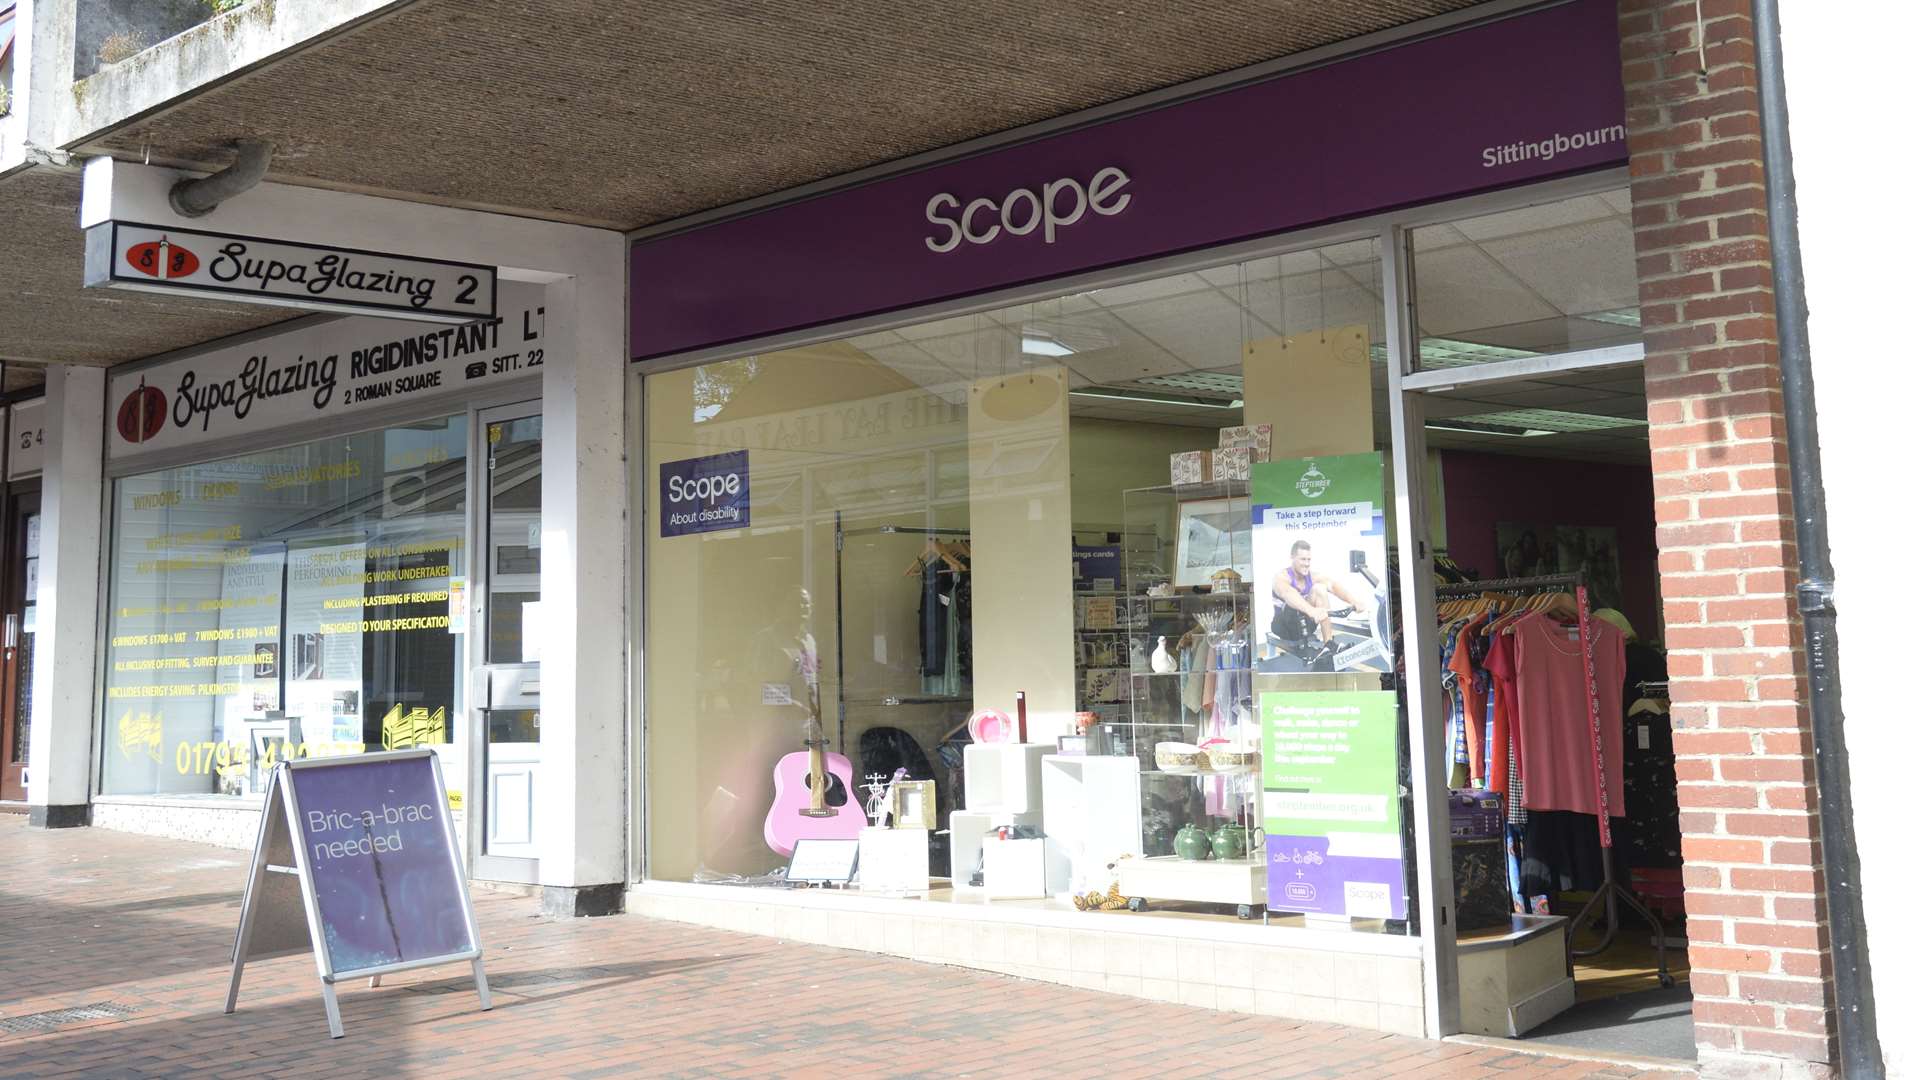 The Scope shop in Roman Square, Sittingbourne